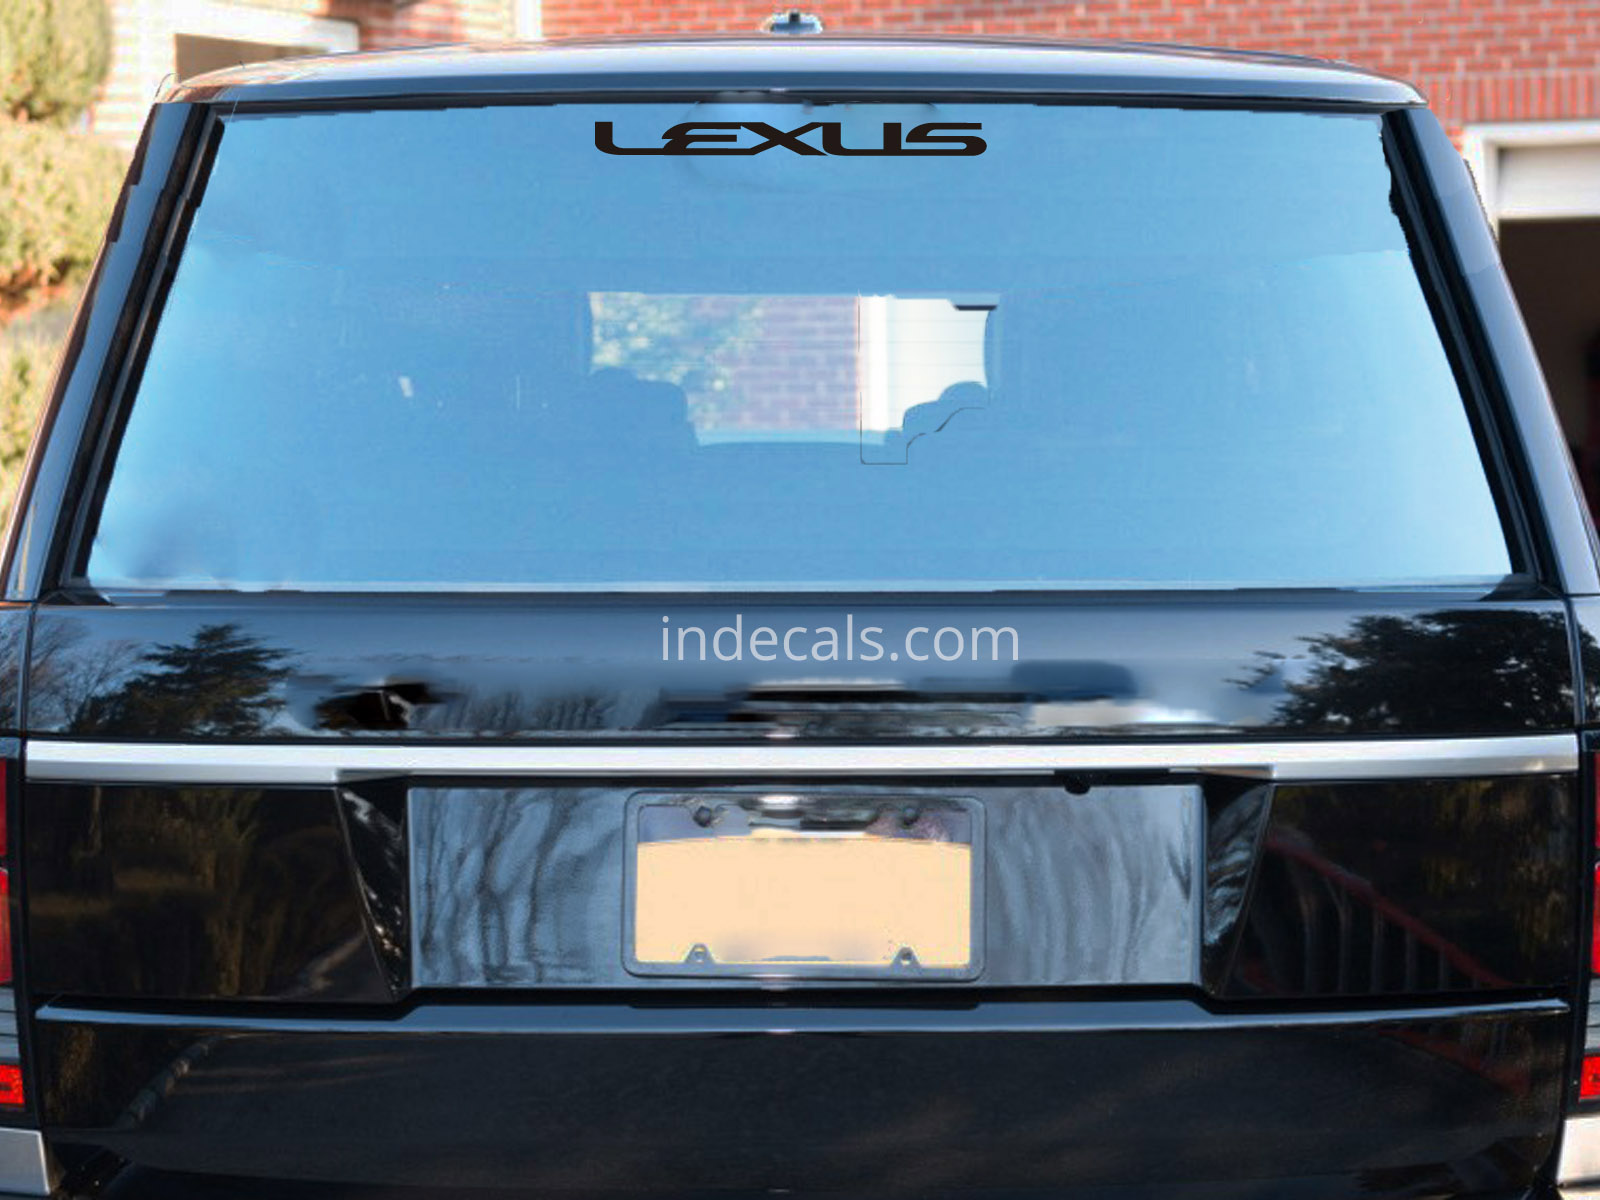 1 x Lexus Sticker for Windshield or Back Window - Black